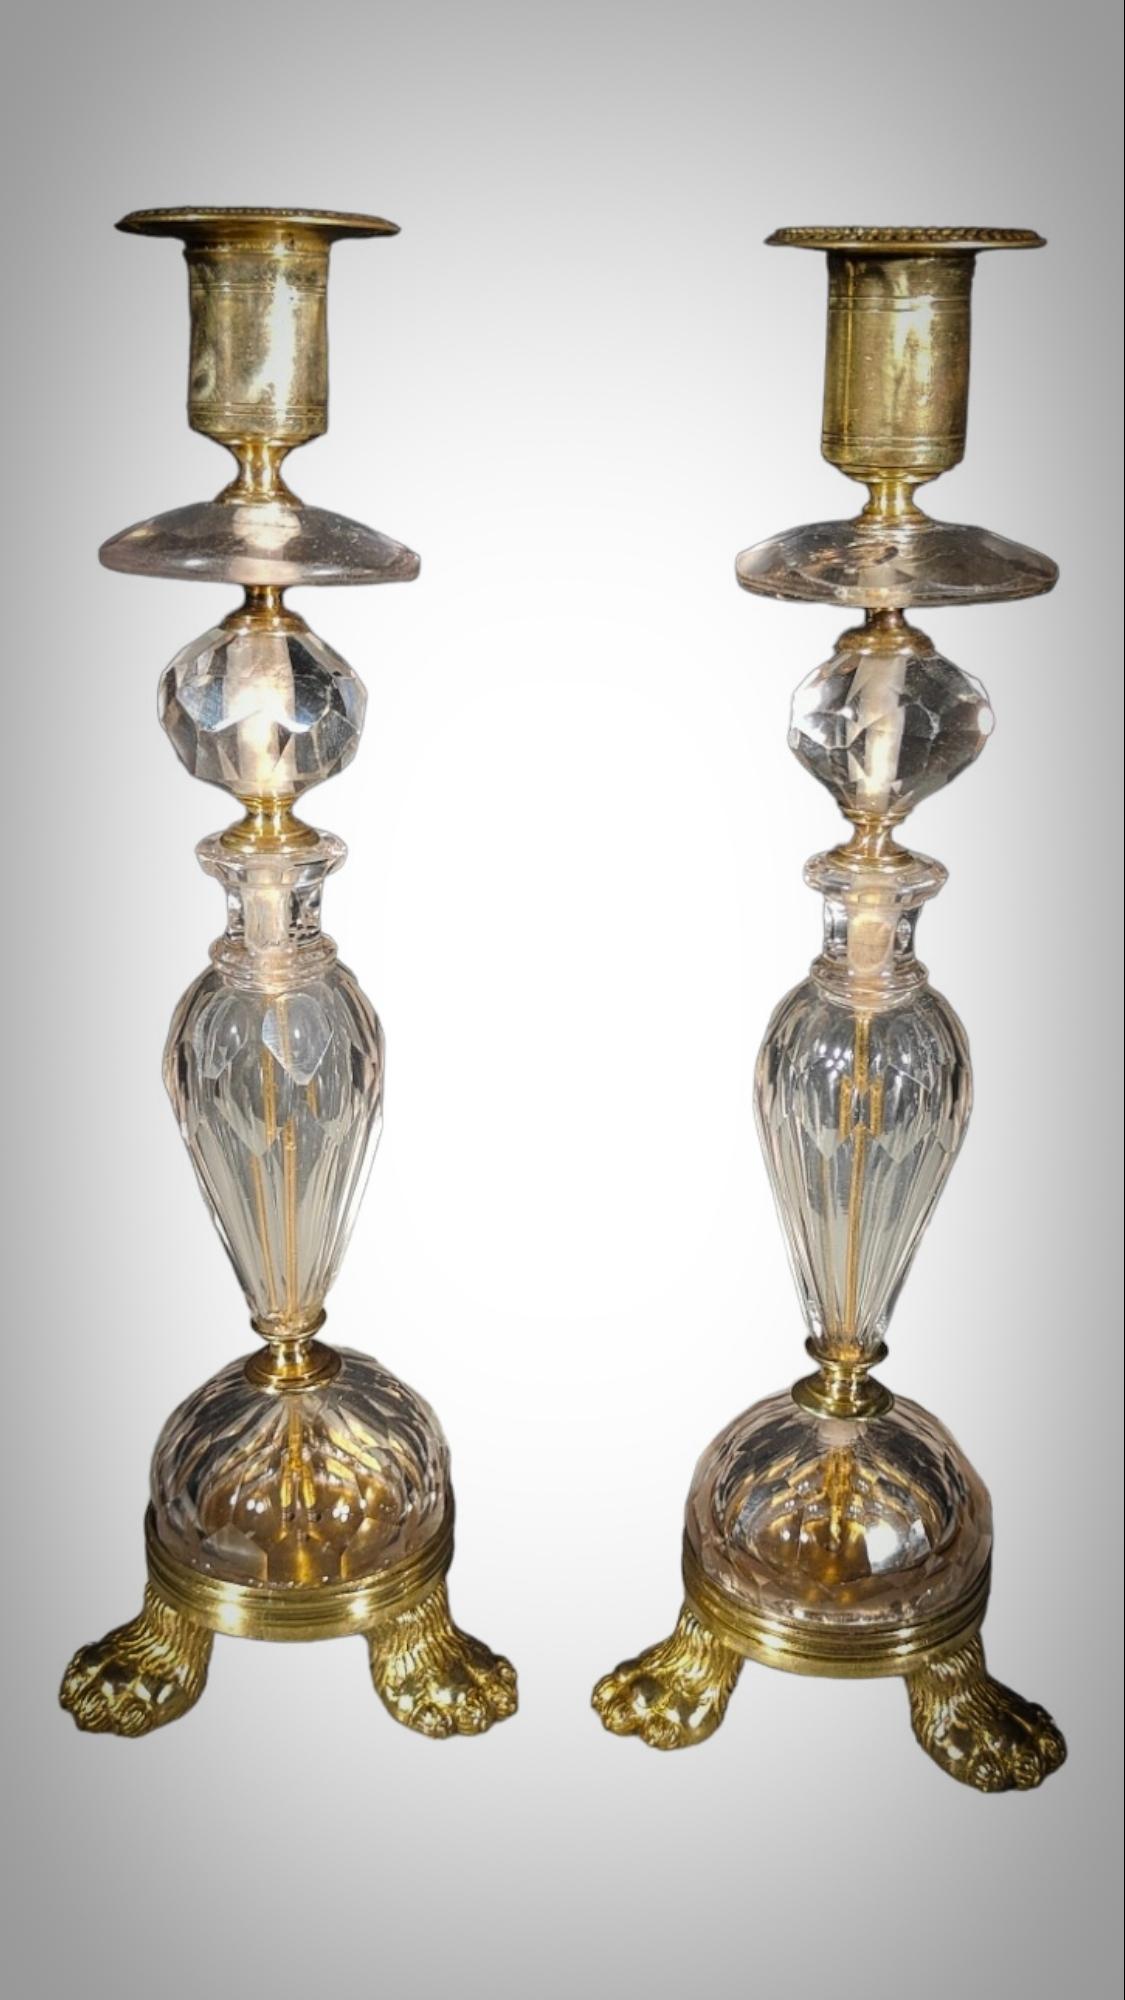 Paire de chandeliers en cristal et montures en bronze doré, fin du XVIIe siècle
Bougeoirs italiens en cristal taillé et poli, à étages, à facettes, avec des détails en laiton incisé. 28x9x9cm